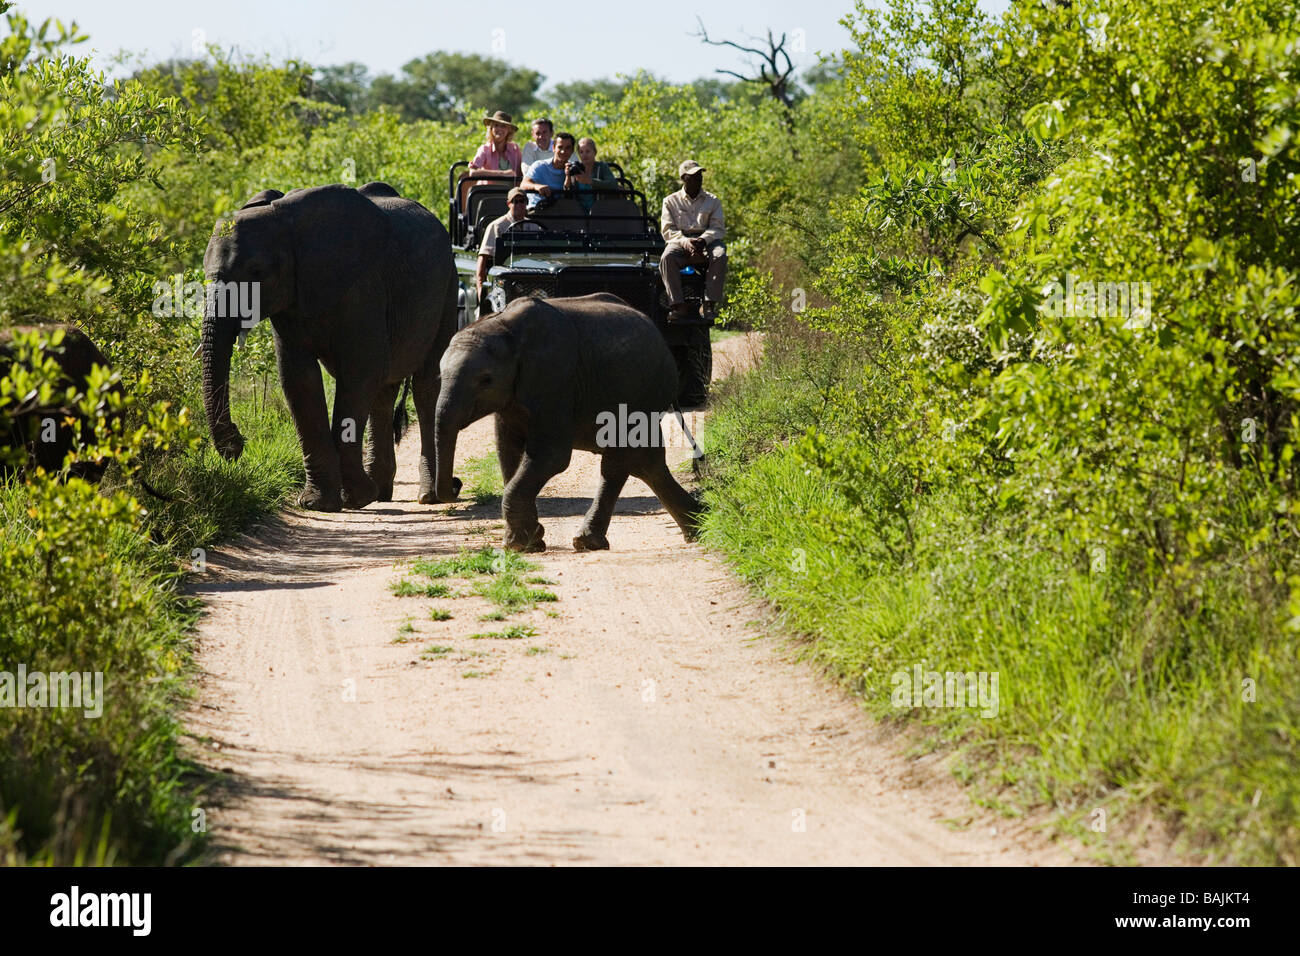 Deux éléphants crossing road, jeep avec les touristes en arrière-plan Banque D'Images